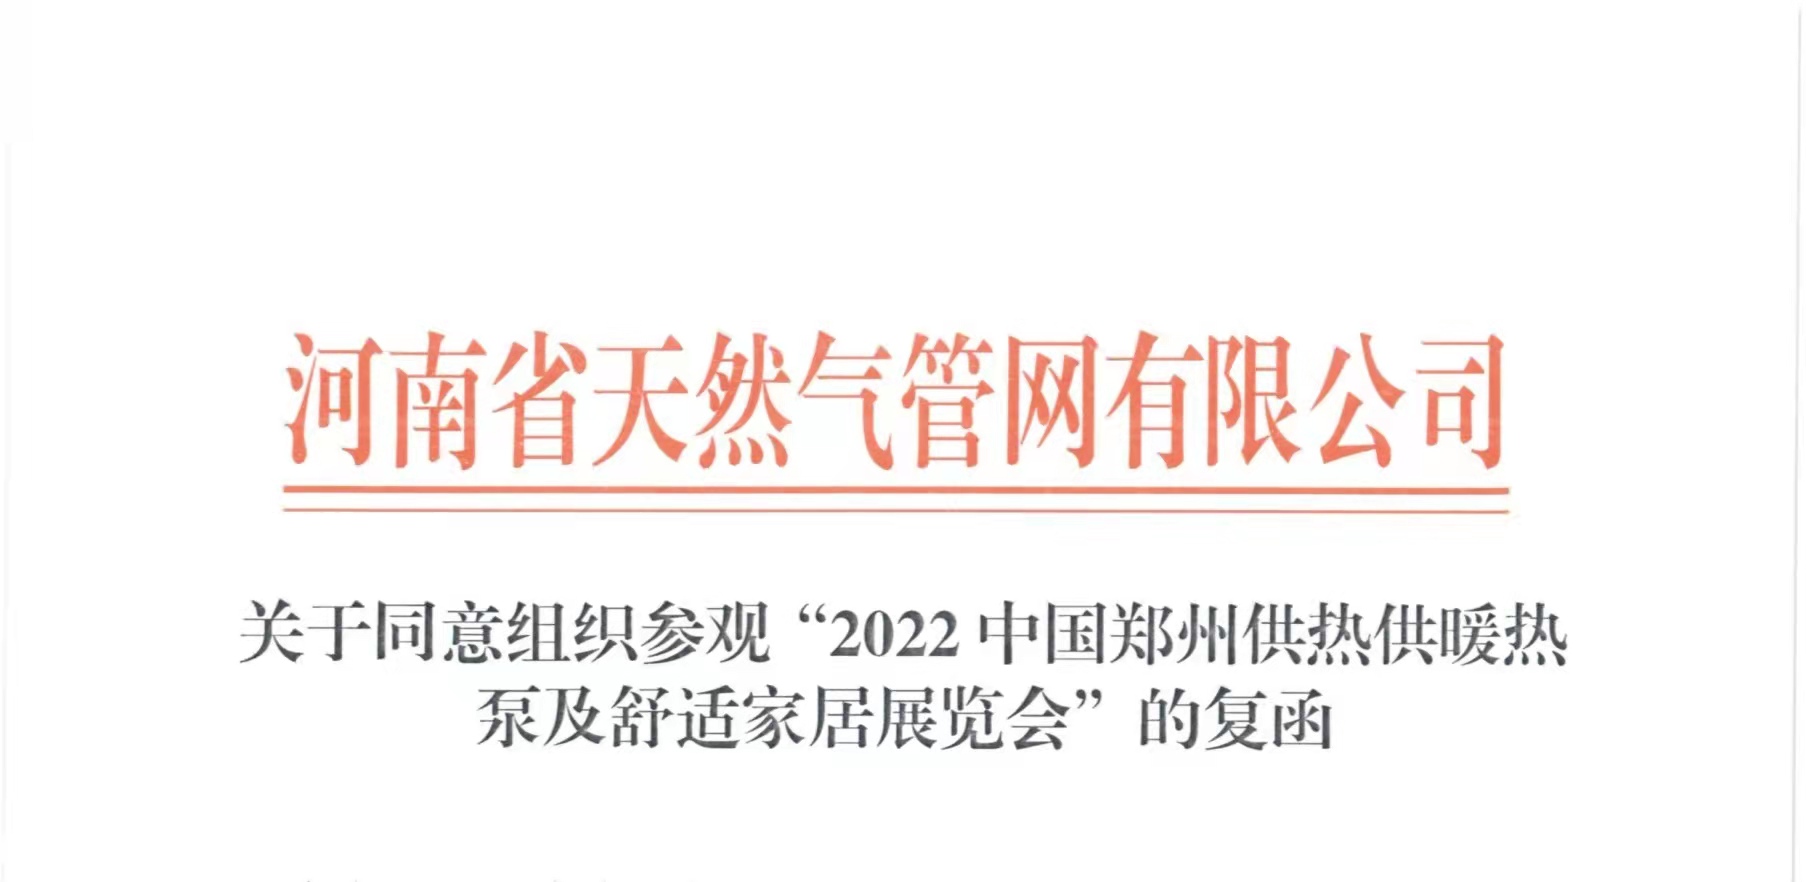 重磅消息丨河南省天然气管网有限公司及其子公司共同